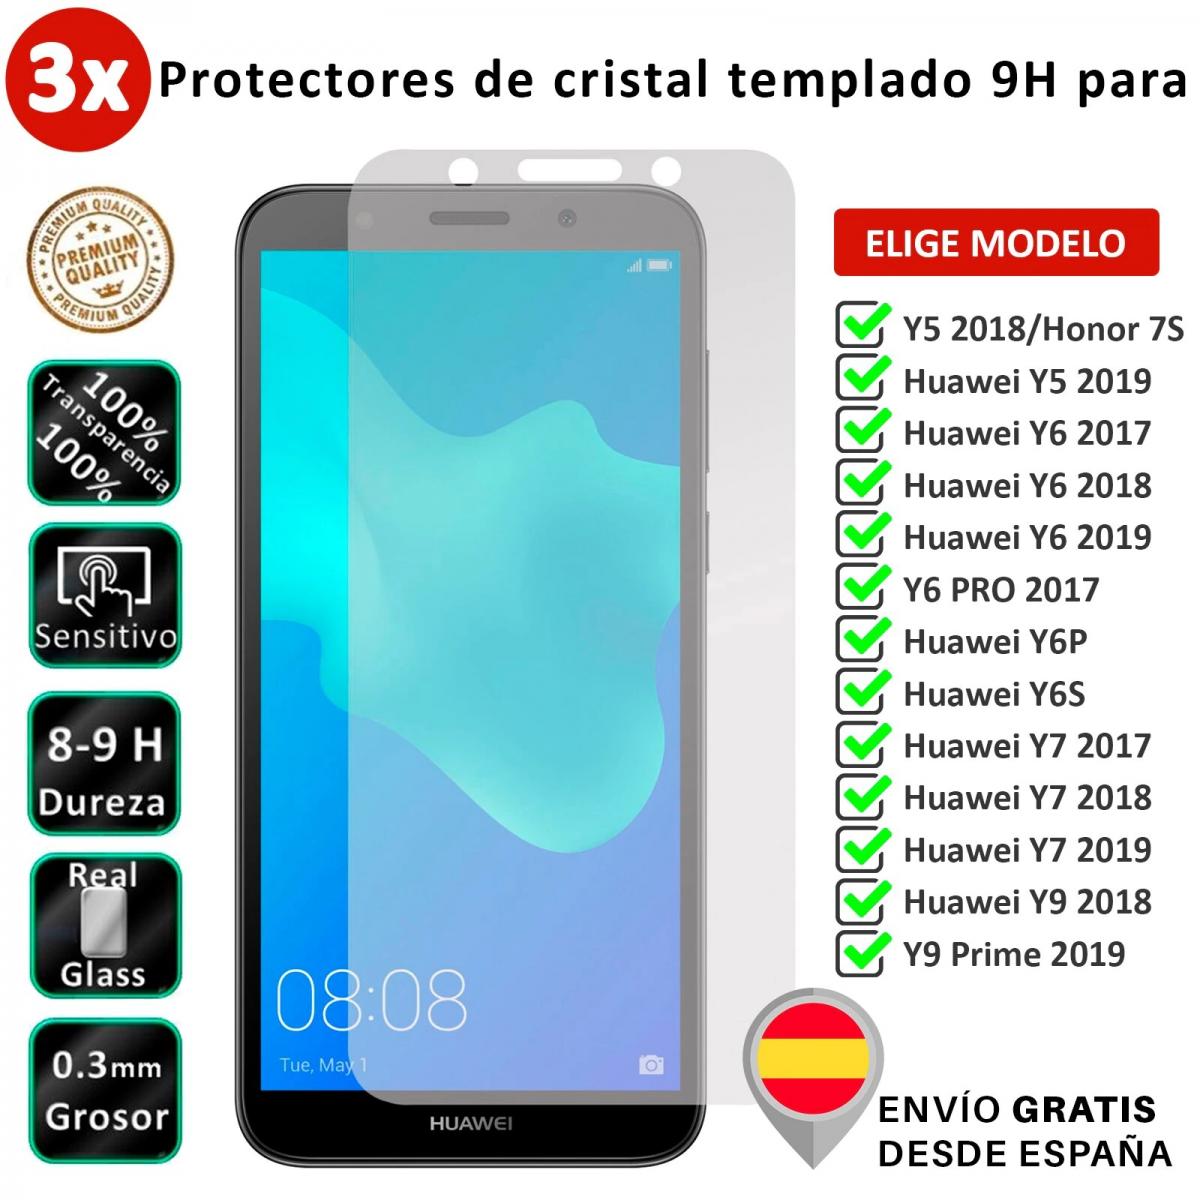 9H Dureza 2 Piezas Alta Definicion NBKASE Protector de Pantalla Cristal Templado Premium para Huawei Honor 8S / Huawei Y5 2019, Protector de Pantalla para Huawei Honor 8S / Huawei Y5 2019 